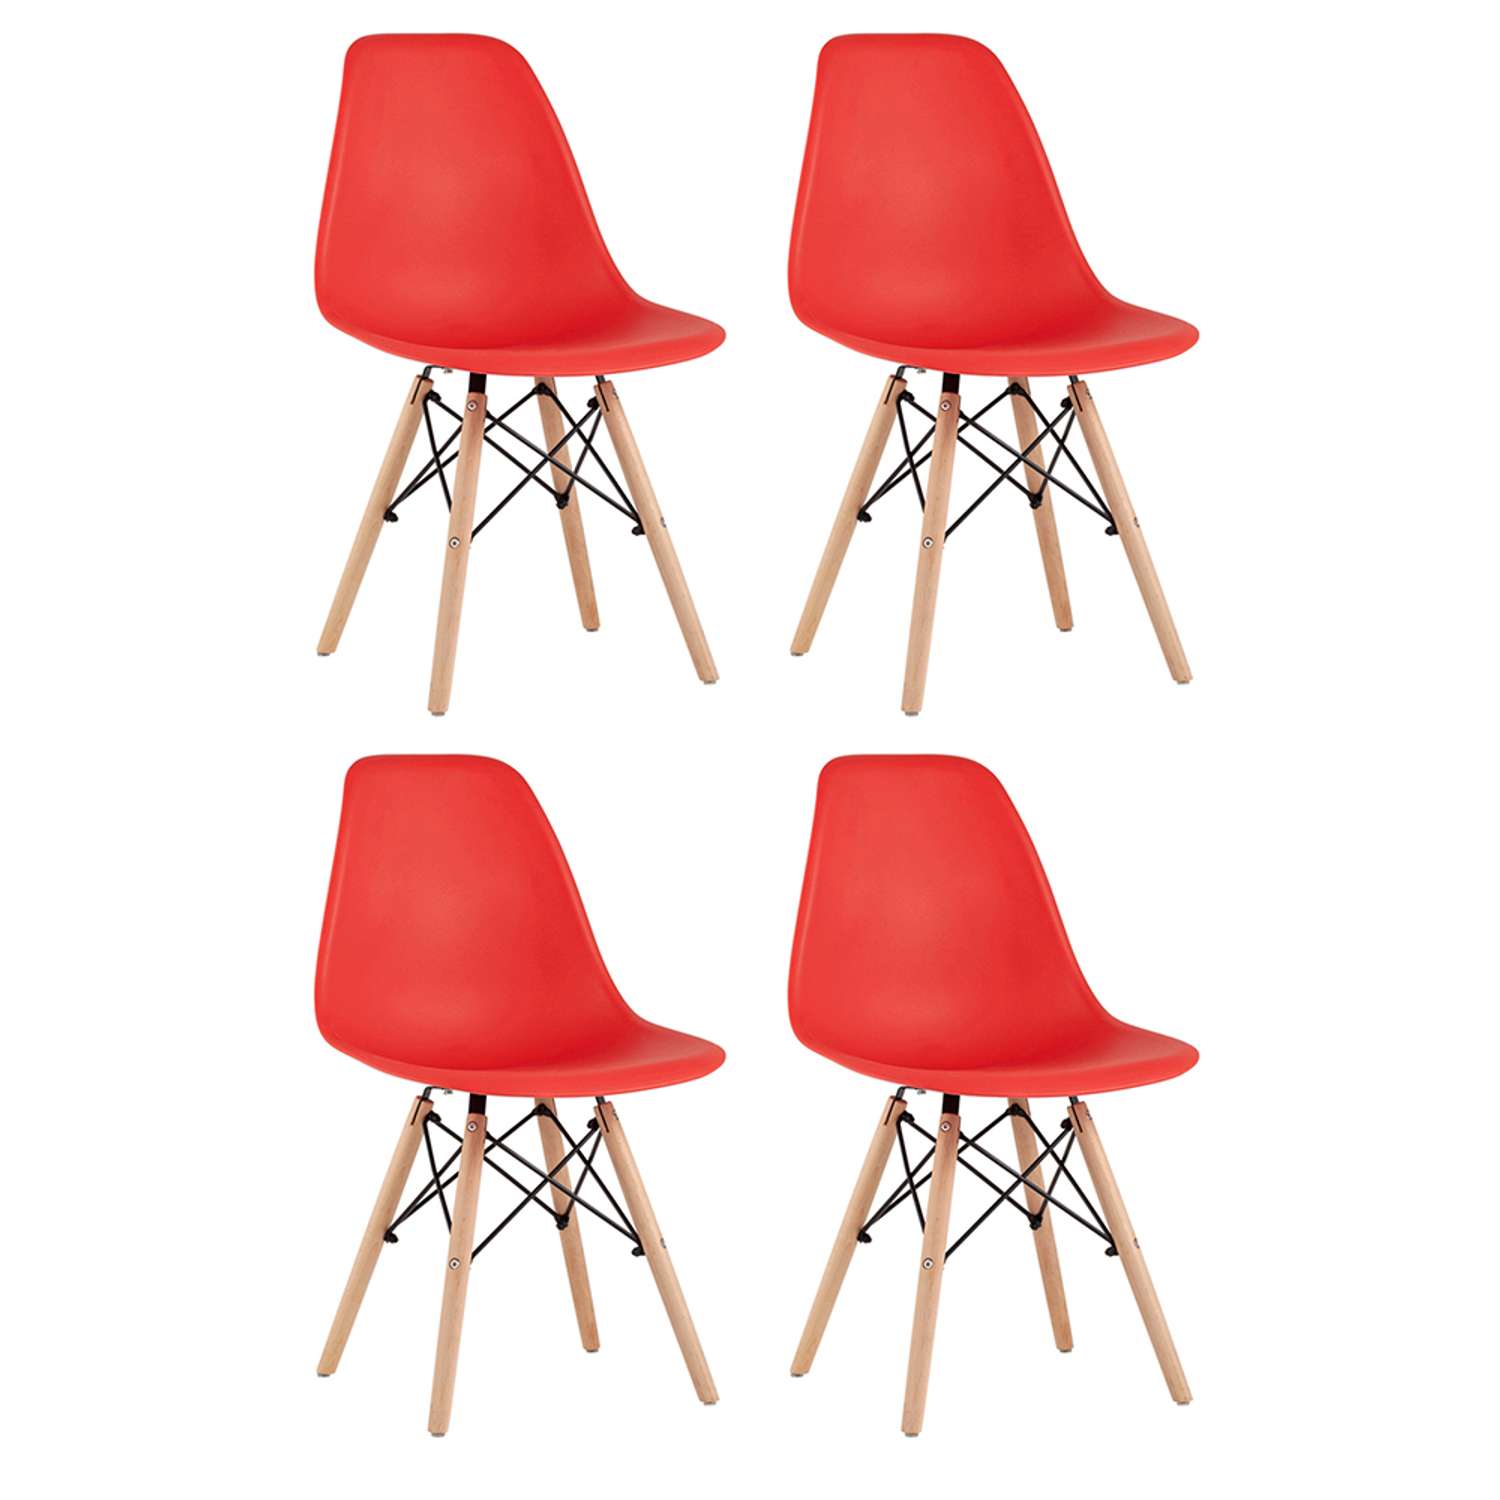 Комплект стульев Stool Group DSW Style красный - фото 2